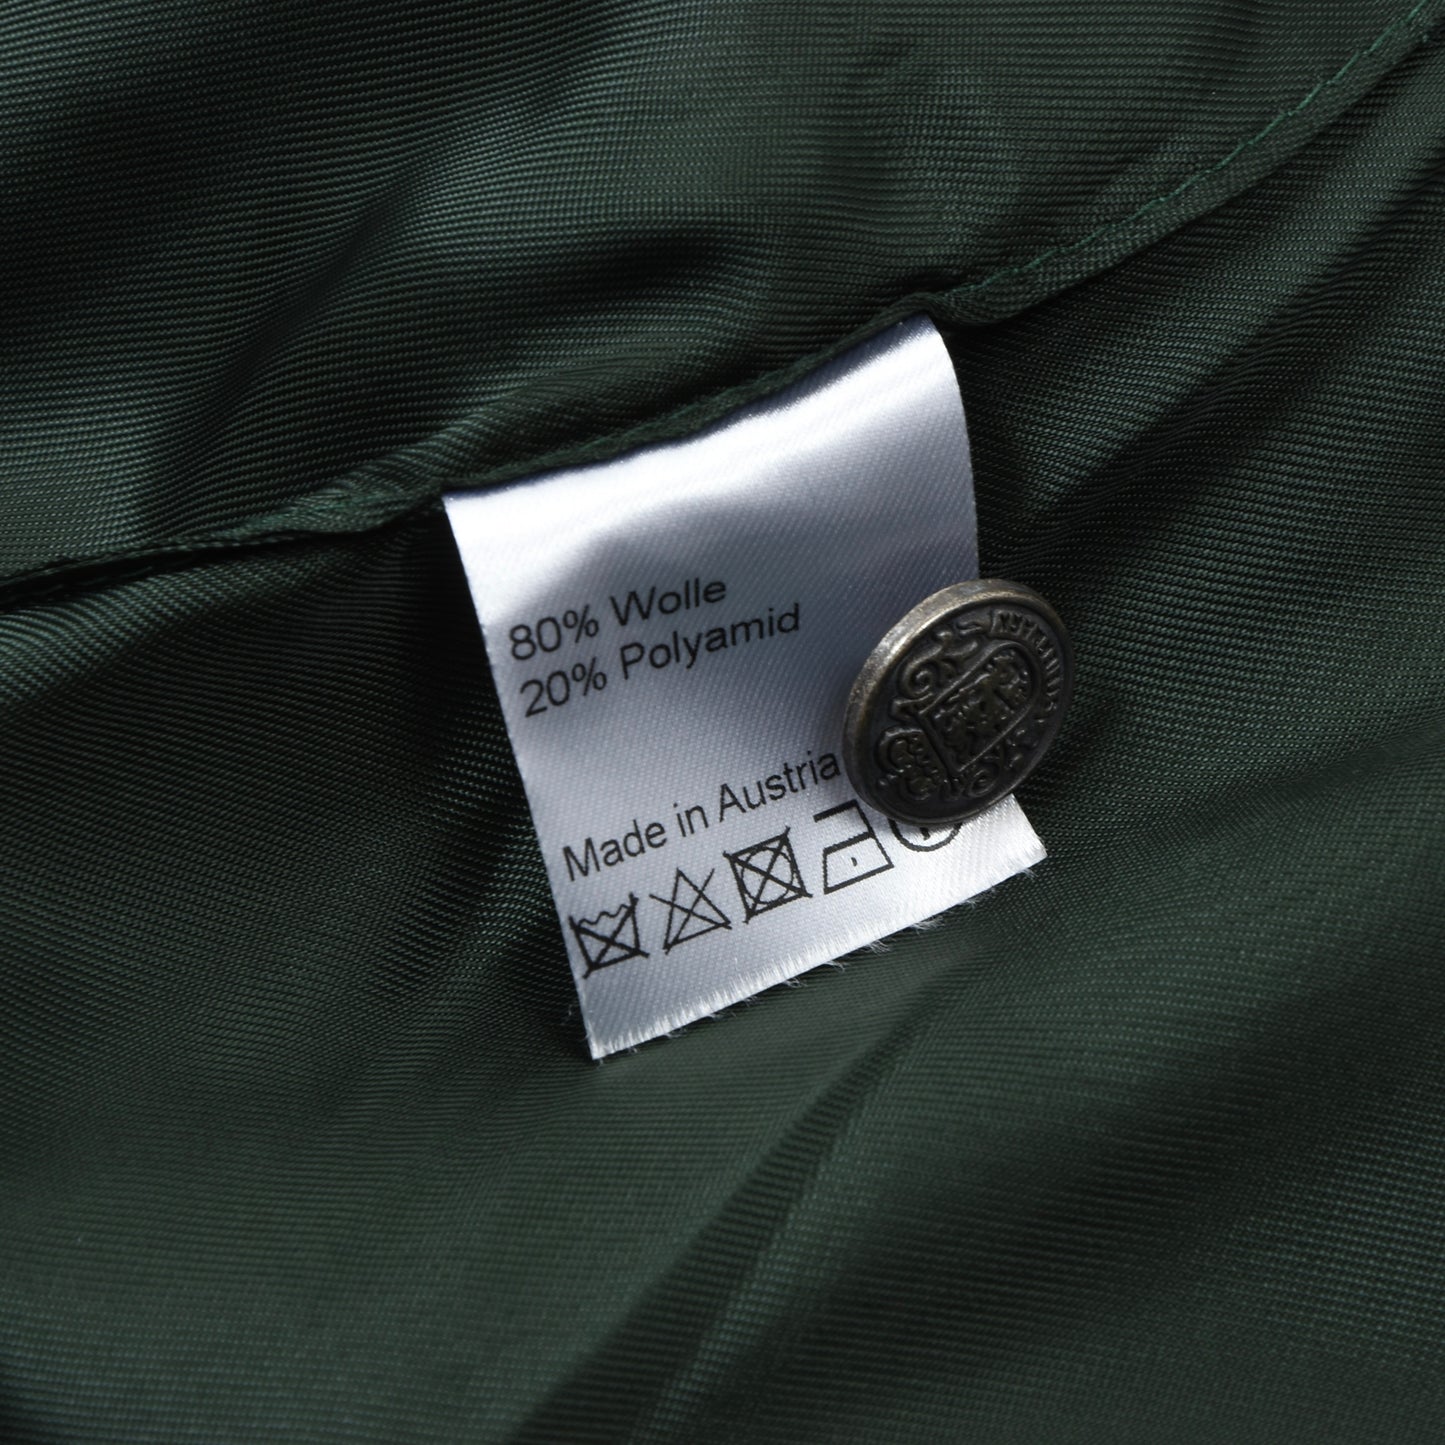 NWT Hiebaum Exclusiv Wool Vest/Trachtengilet Size 46 - Green